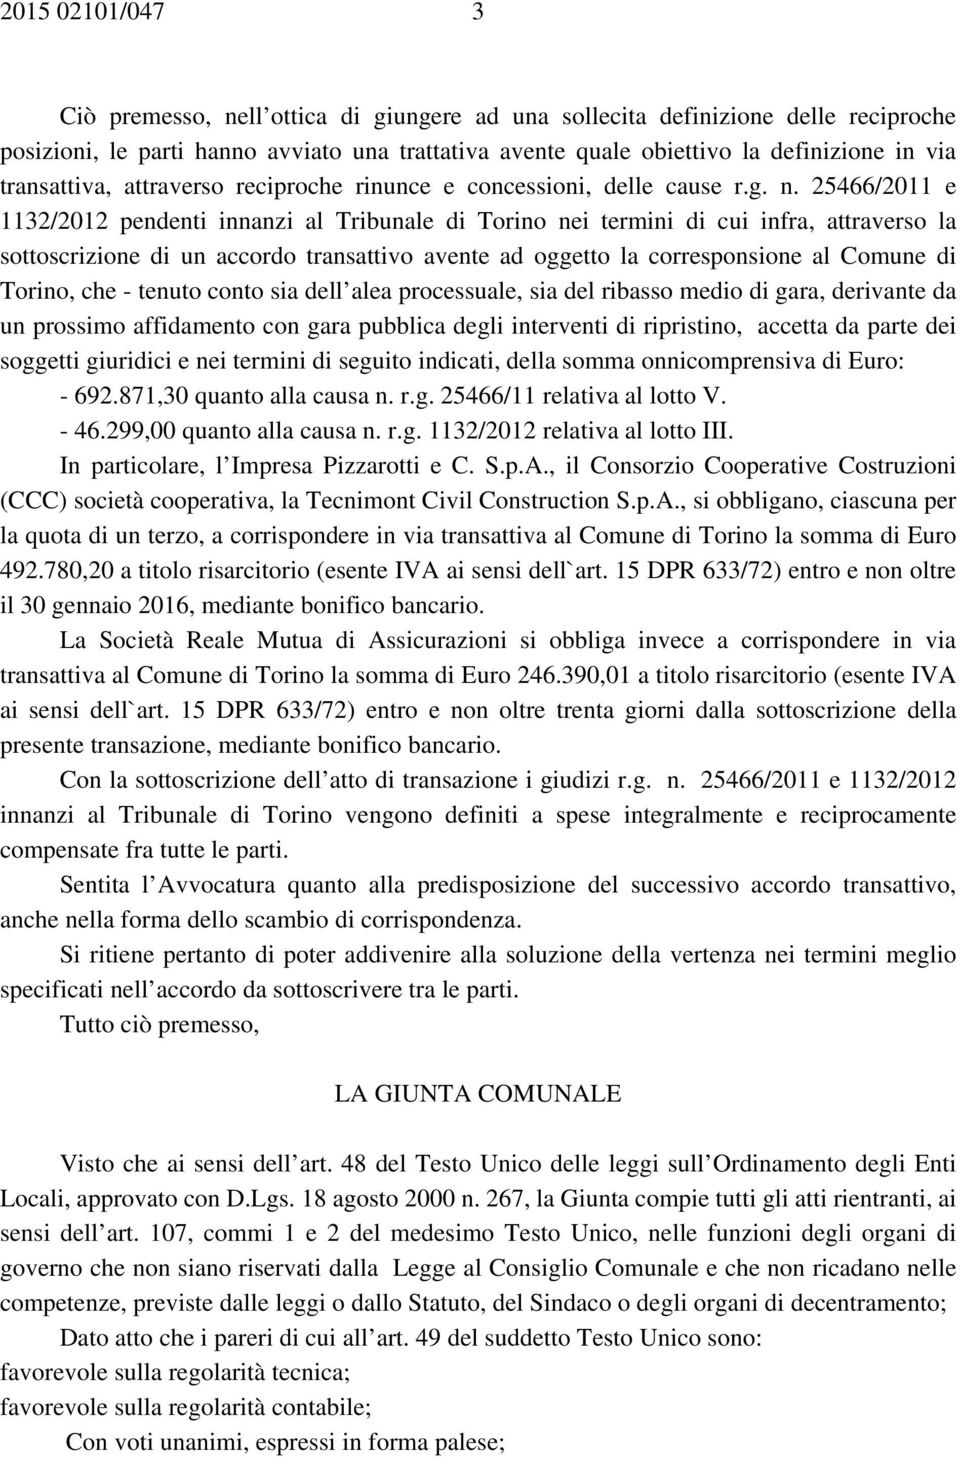 25466/2011 e 1132/2012 pendenti innanzi al Tribunale di Torino nei termini di cui infra, attraverso la sottoscrizione di un accordo transattivo avente ad oggetto la corresponsione al Comune di